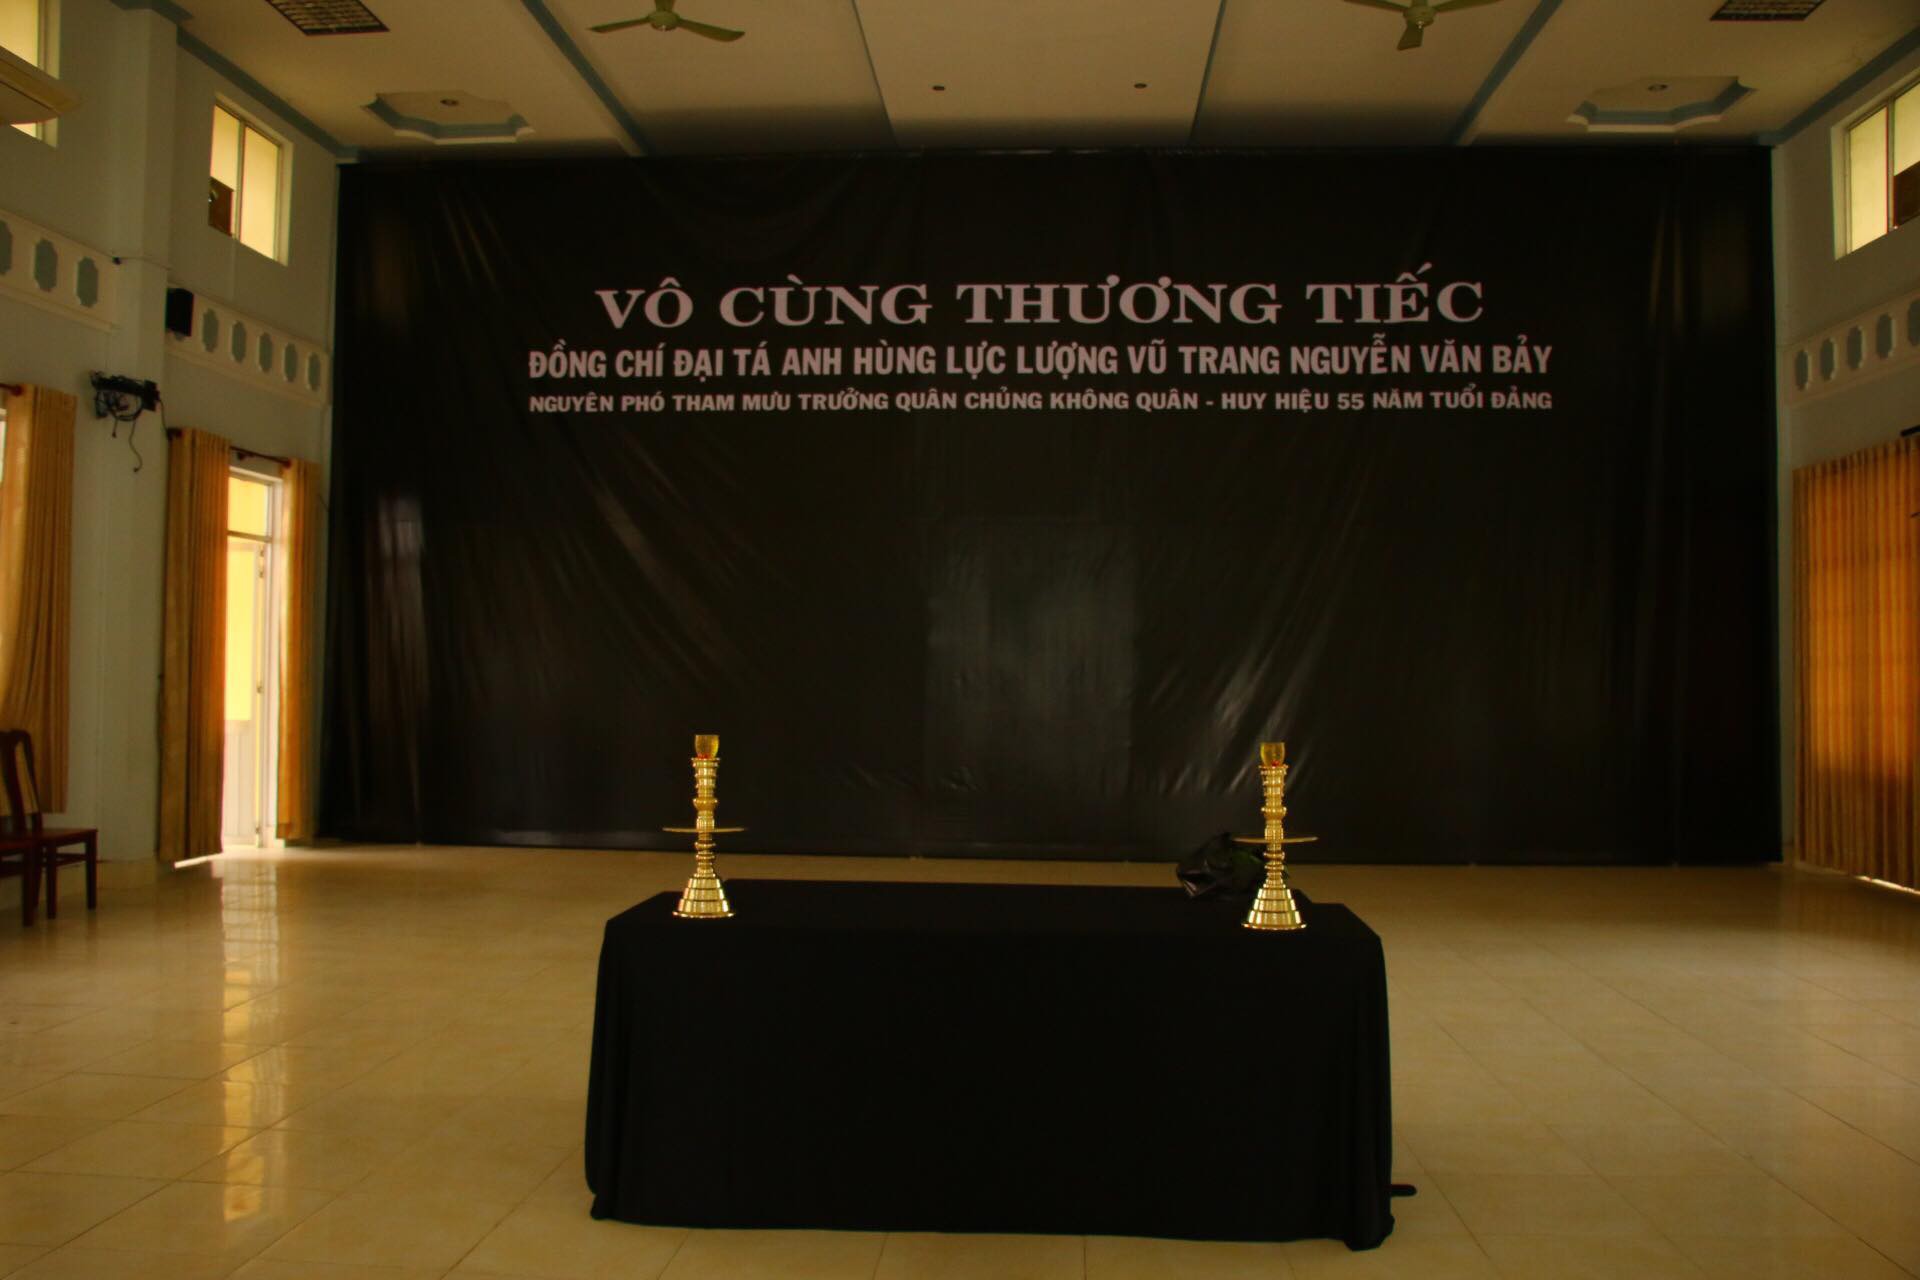 Lễ viếng Đại tá phi công Nguyễn Văn Bảy đang diễn ra tại quê nhà - Ảnh 10.